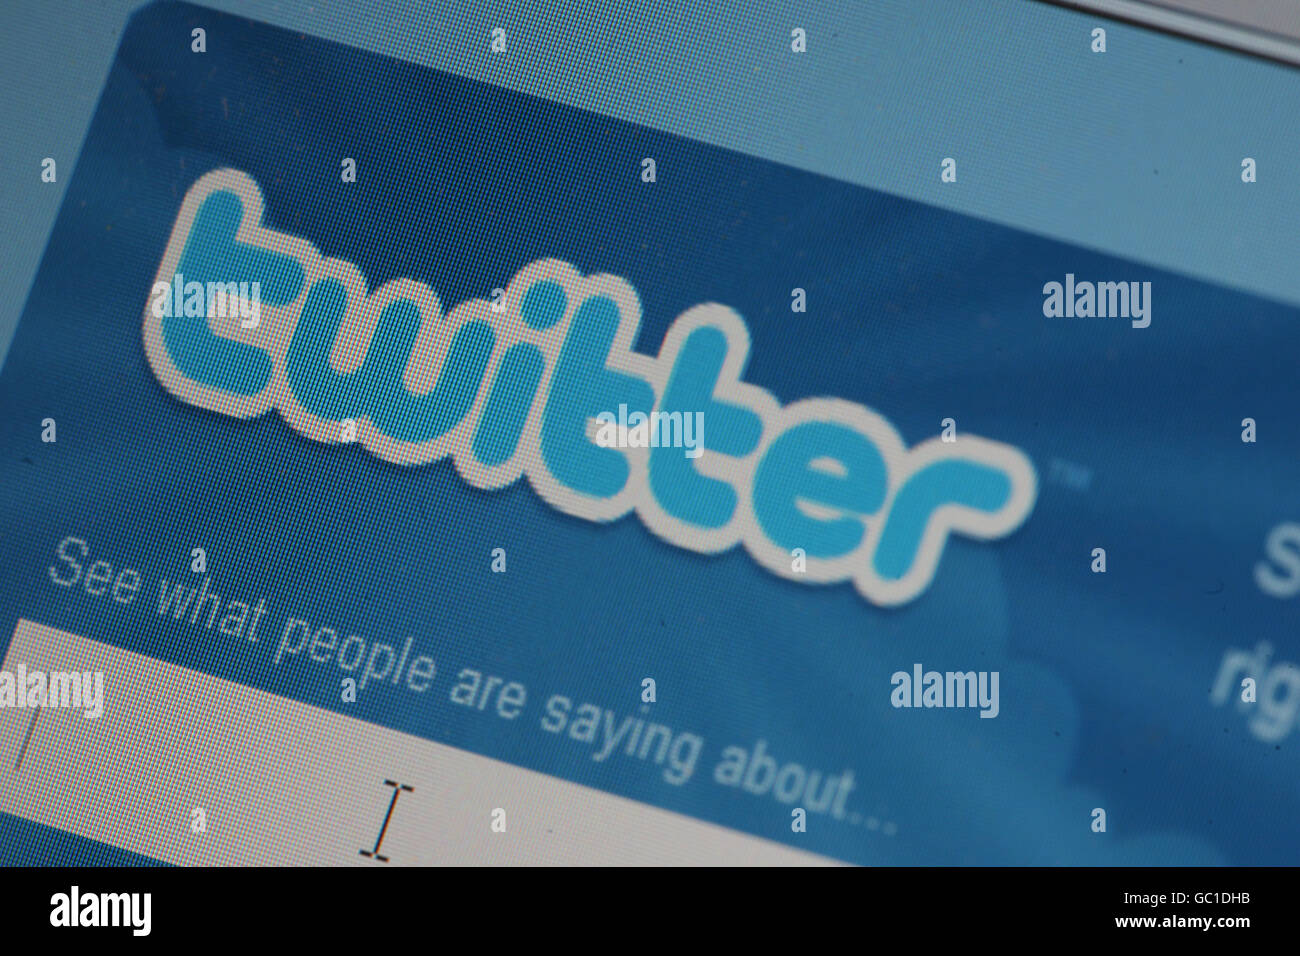 El icono de Twitter se muestra en un ordenador portátil. Foto de stock